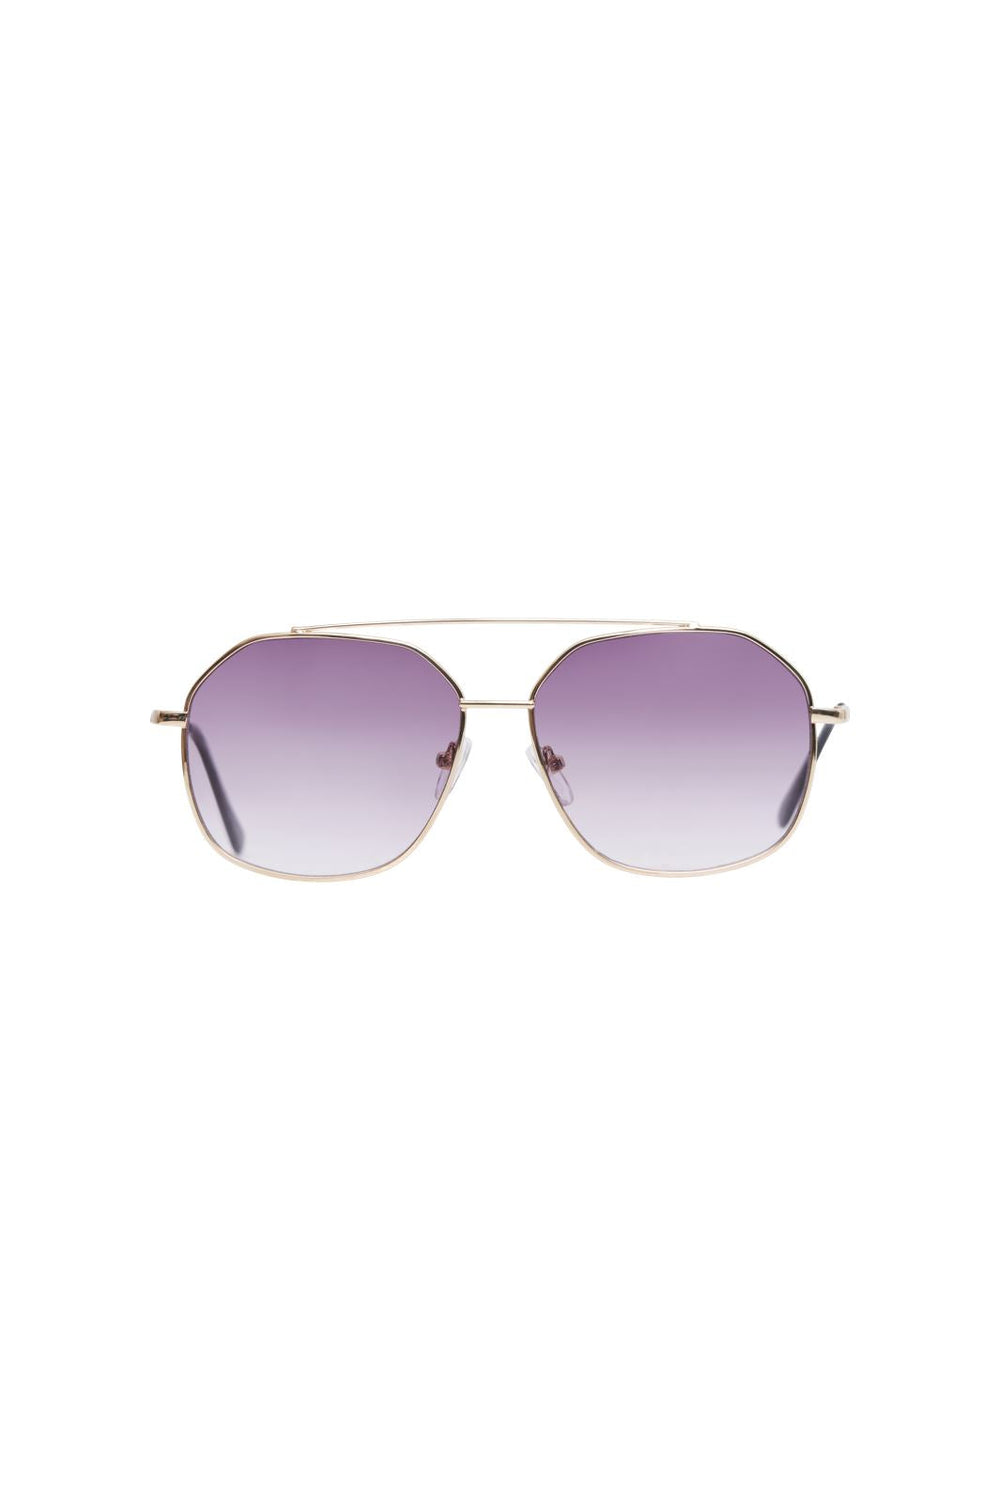 Pieces - Pcandie M Sunglasses - 4399346 Gold Colour Purple Lens